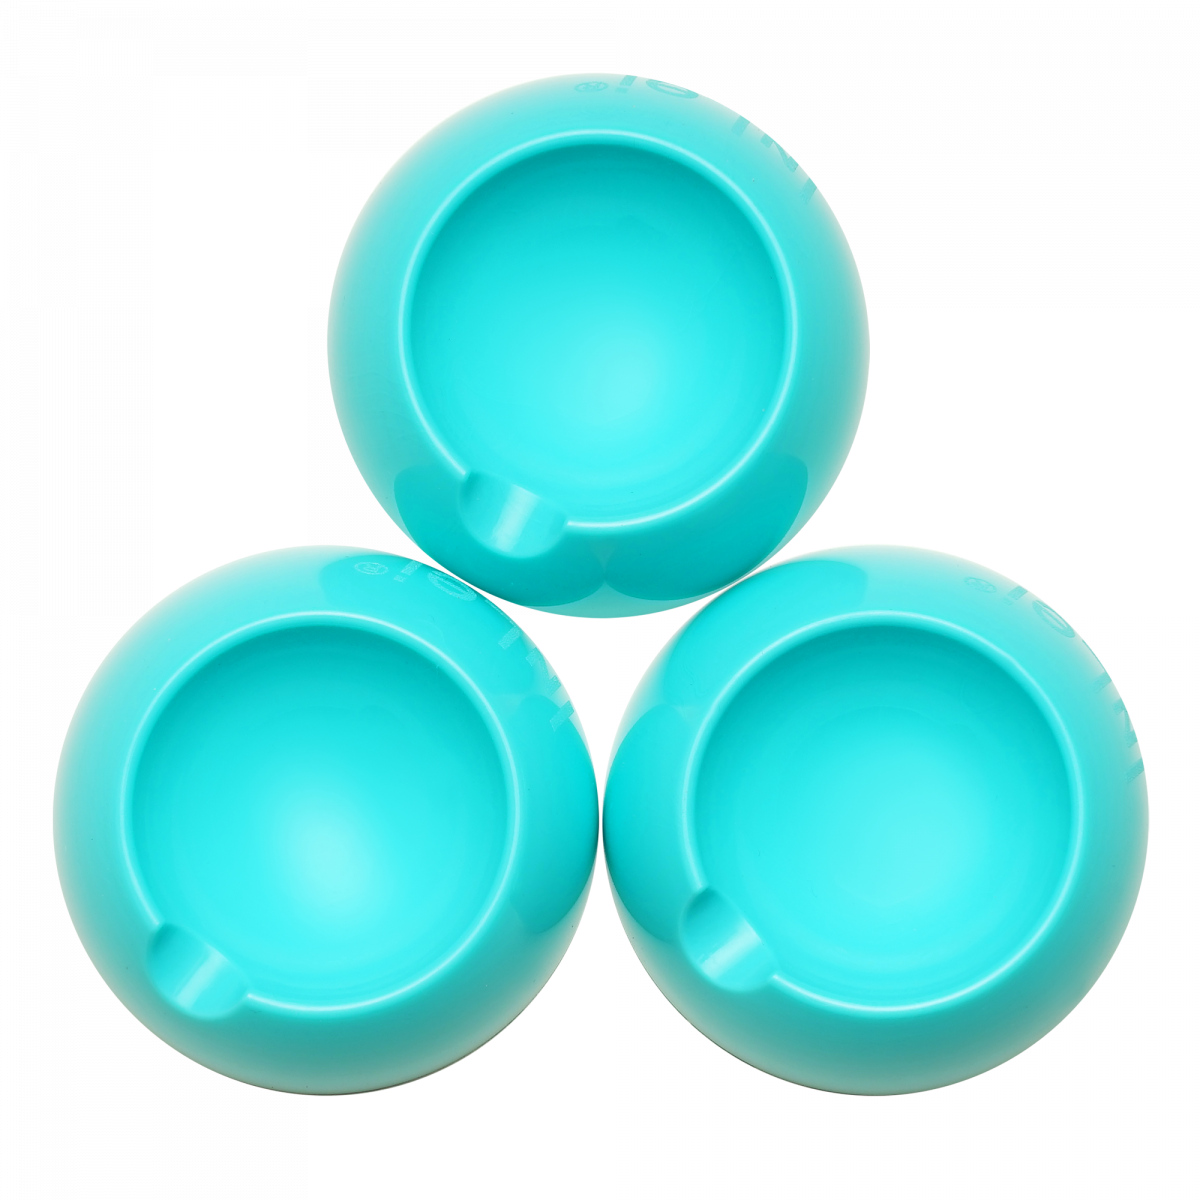 InLei® - Solo - 3 little bowls